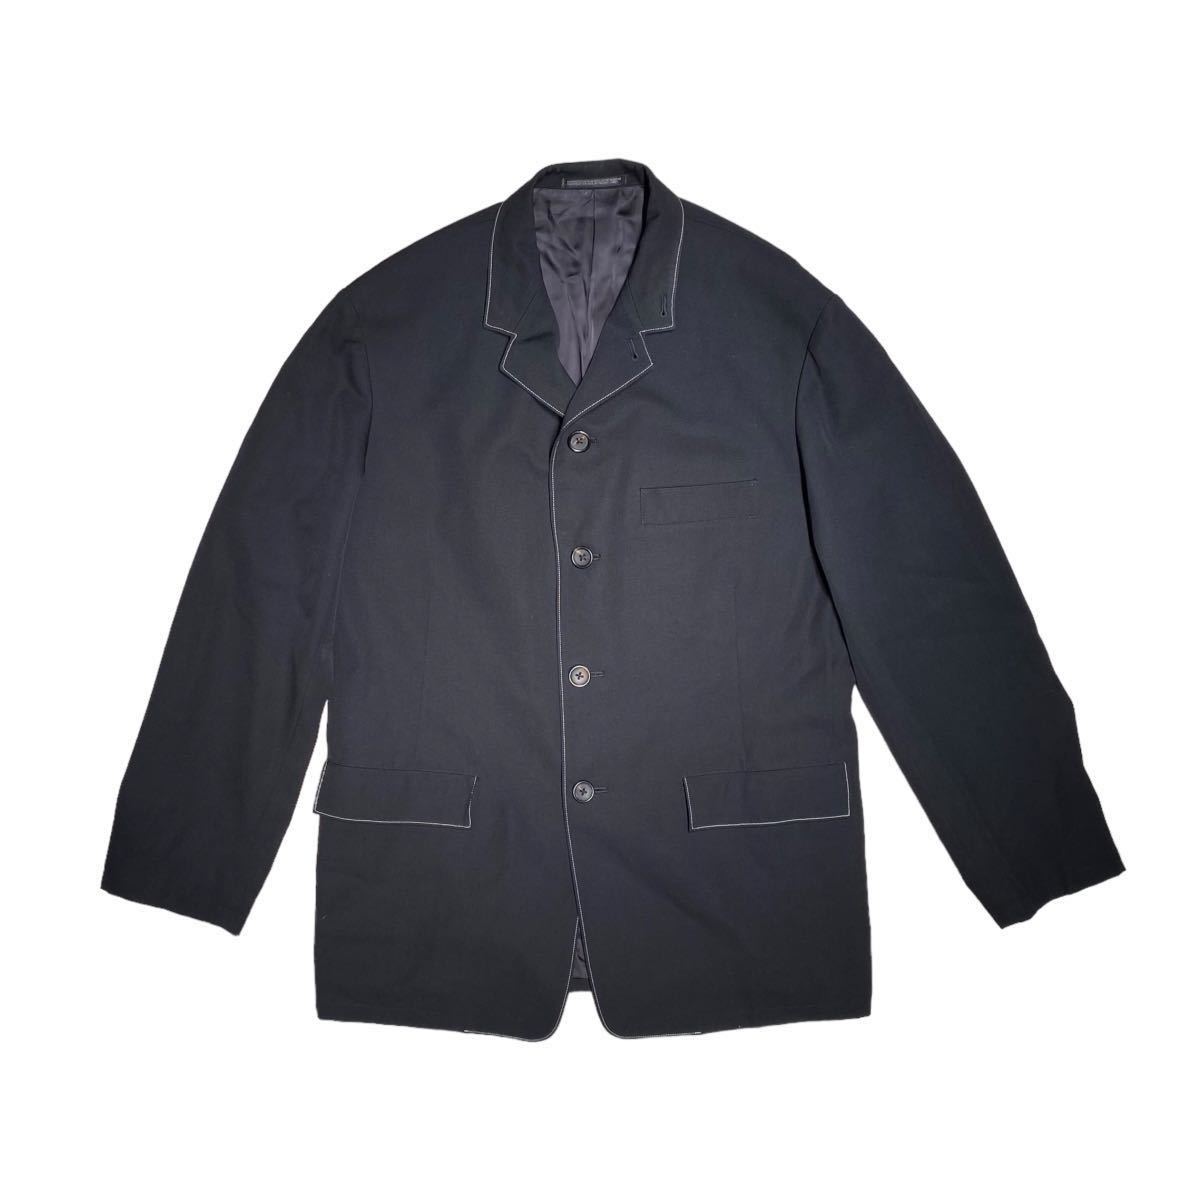 yohji yamamoto pour homme 97aw 蝋人形期 ジャケット jacket ヨウジヤマモトプールオム 黒 ブラック ビンテージ vintage